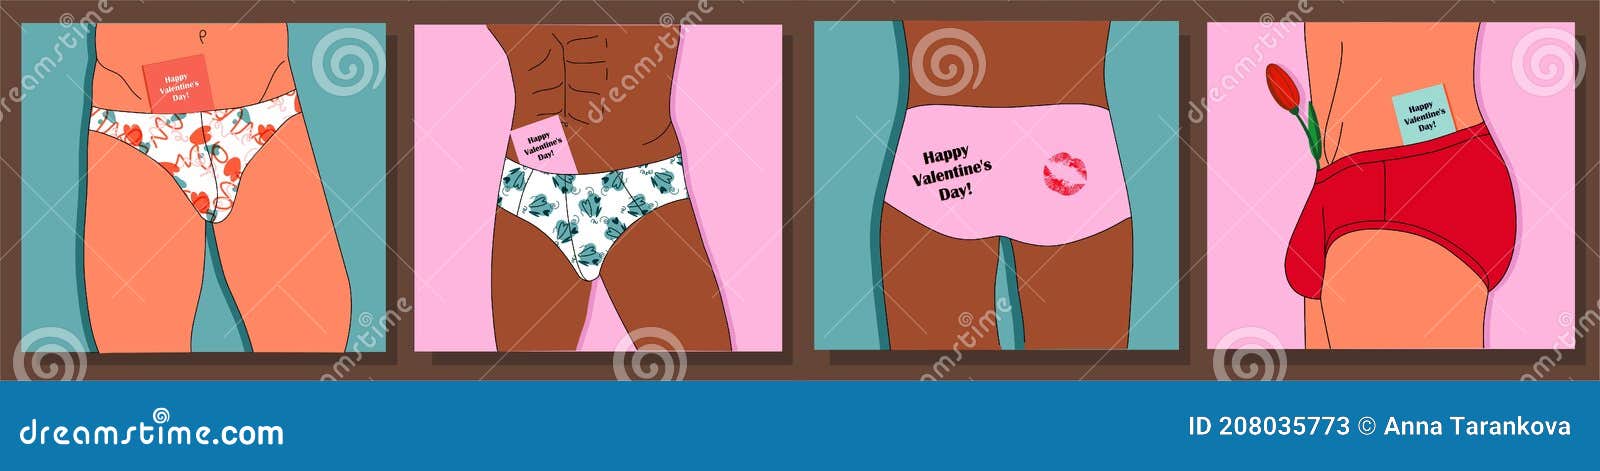 Valentine S Day. Man. Men S Underwear Stock Vector - Illustration